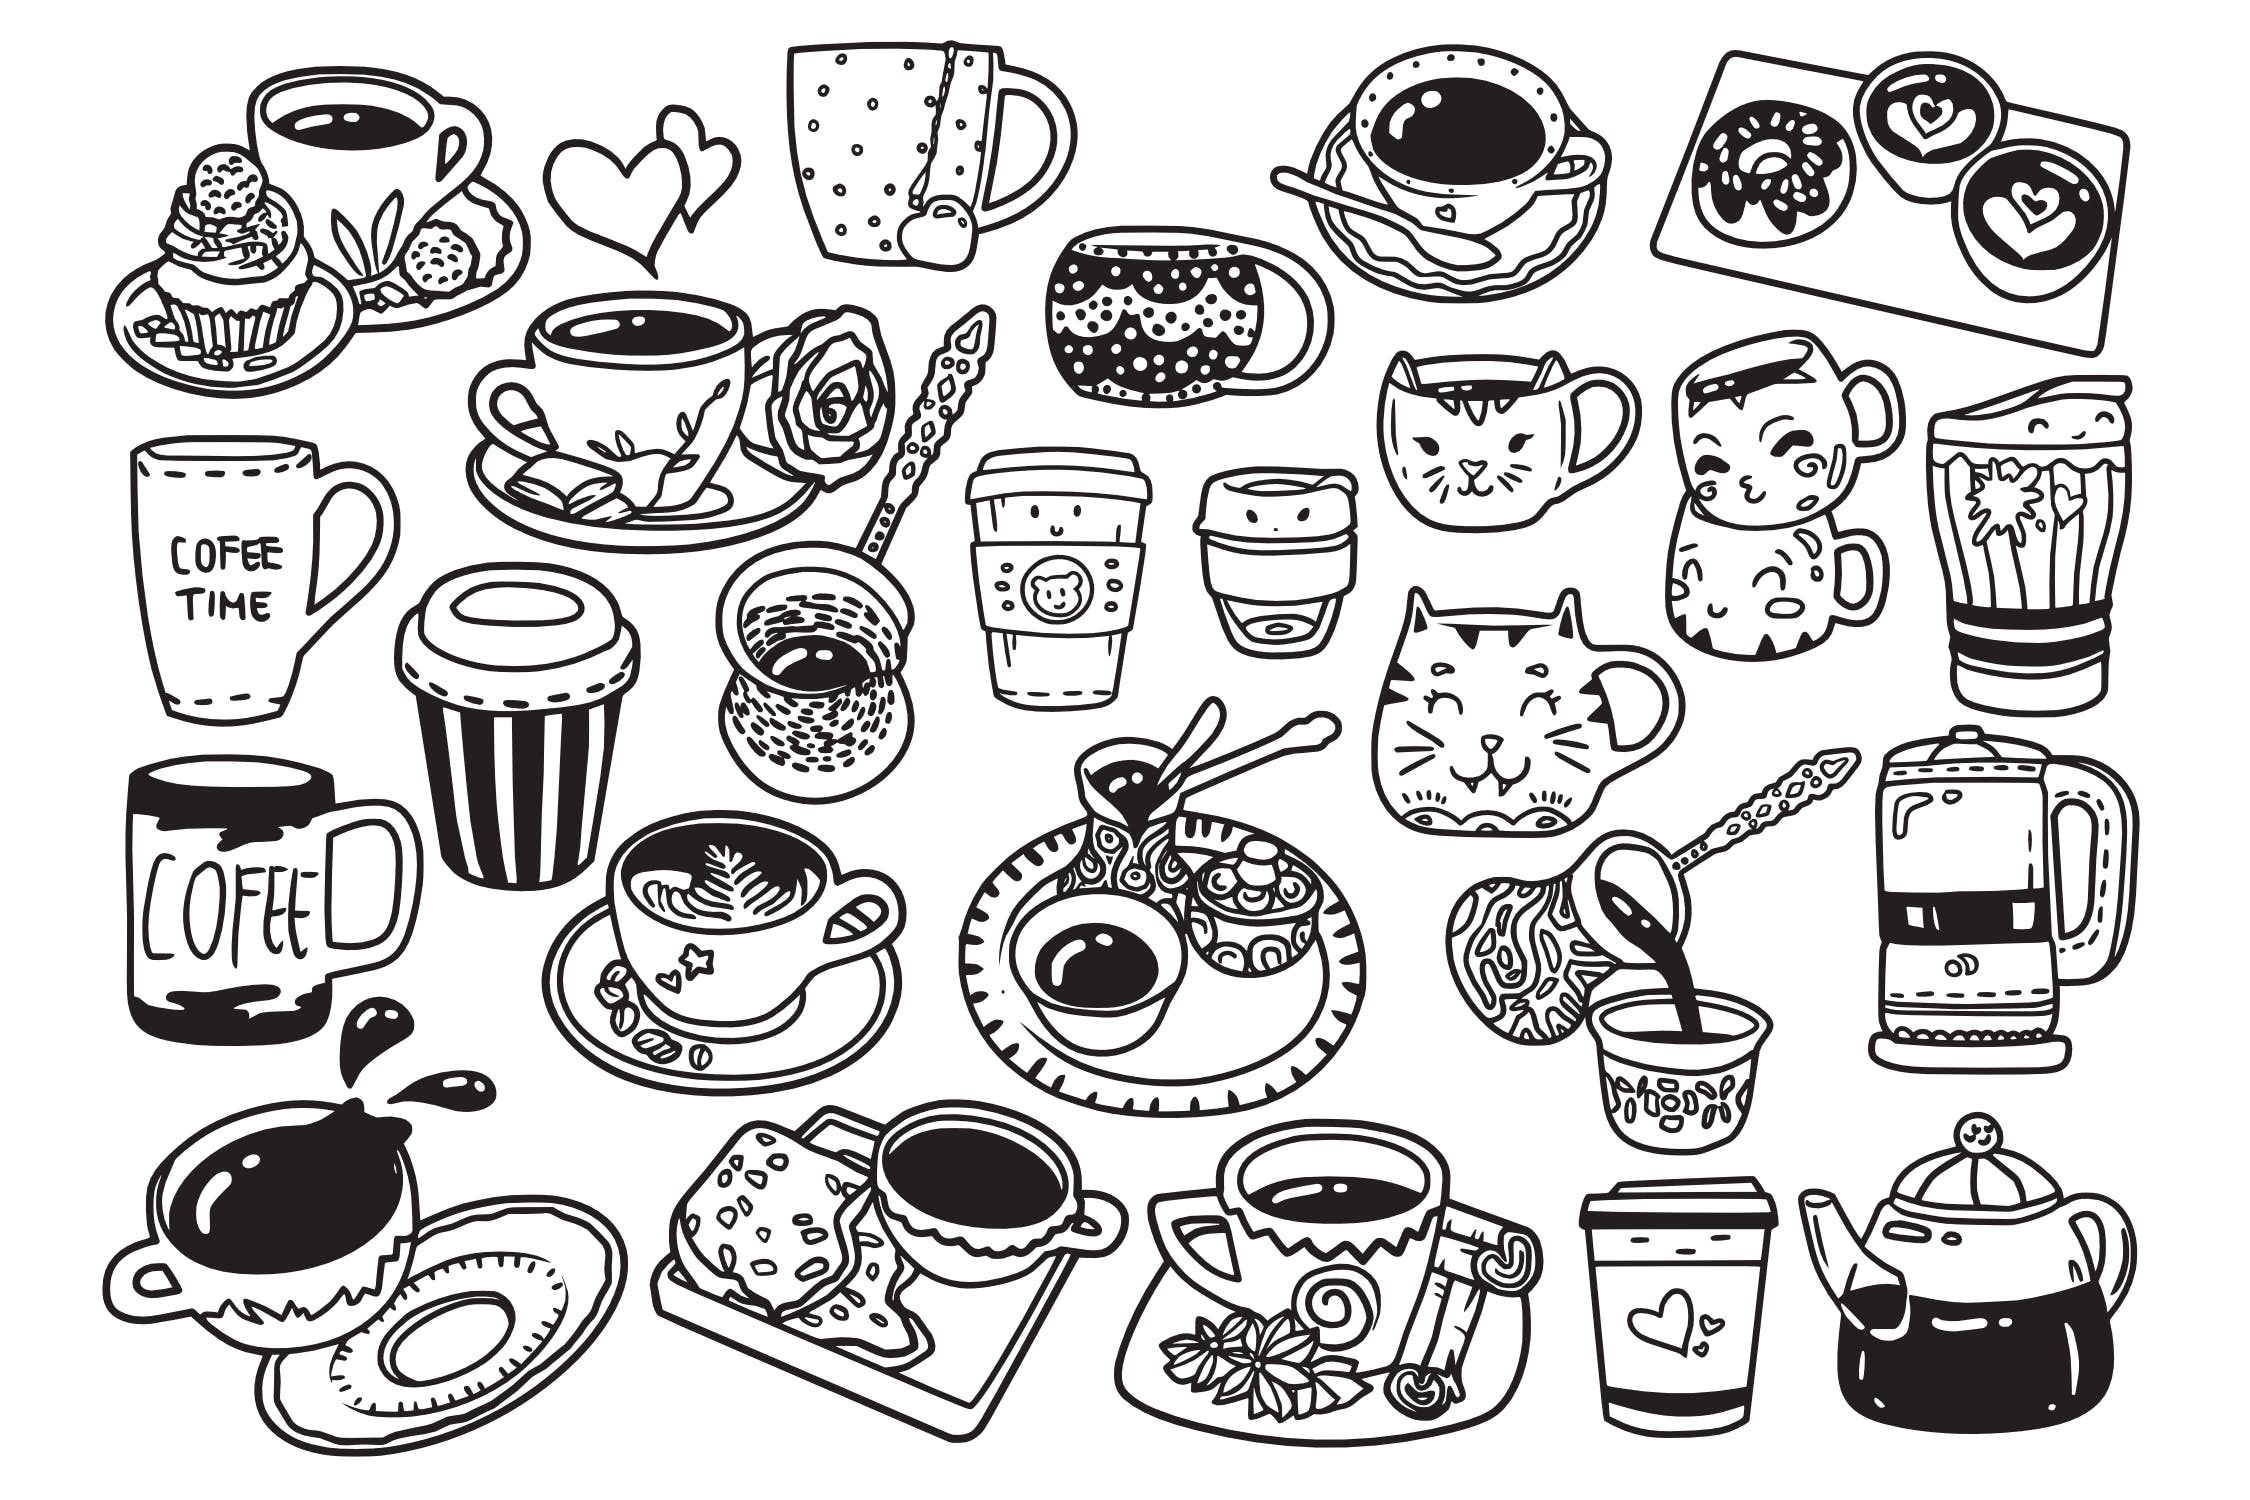 25款咖啡元素涂鸦手绘图案设计素材 Coffee Doodle Vector插图(1)